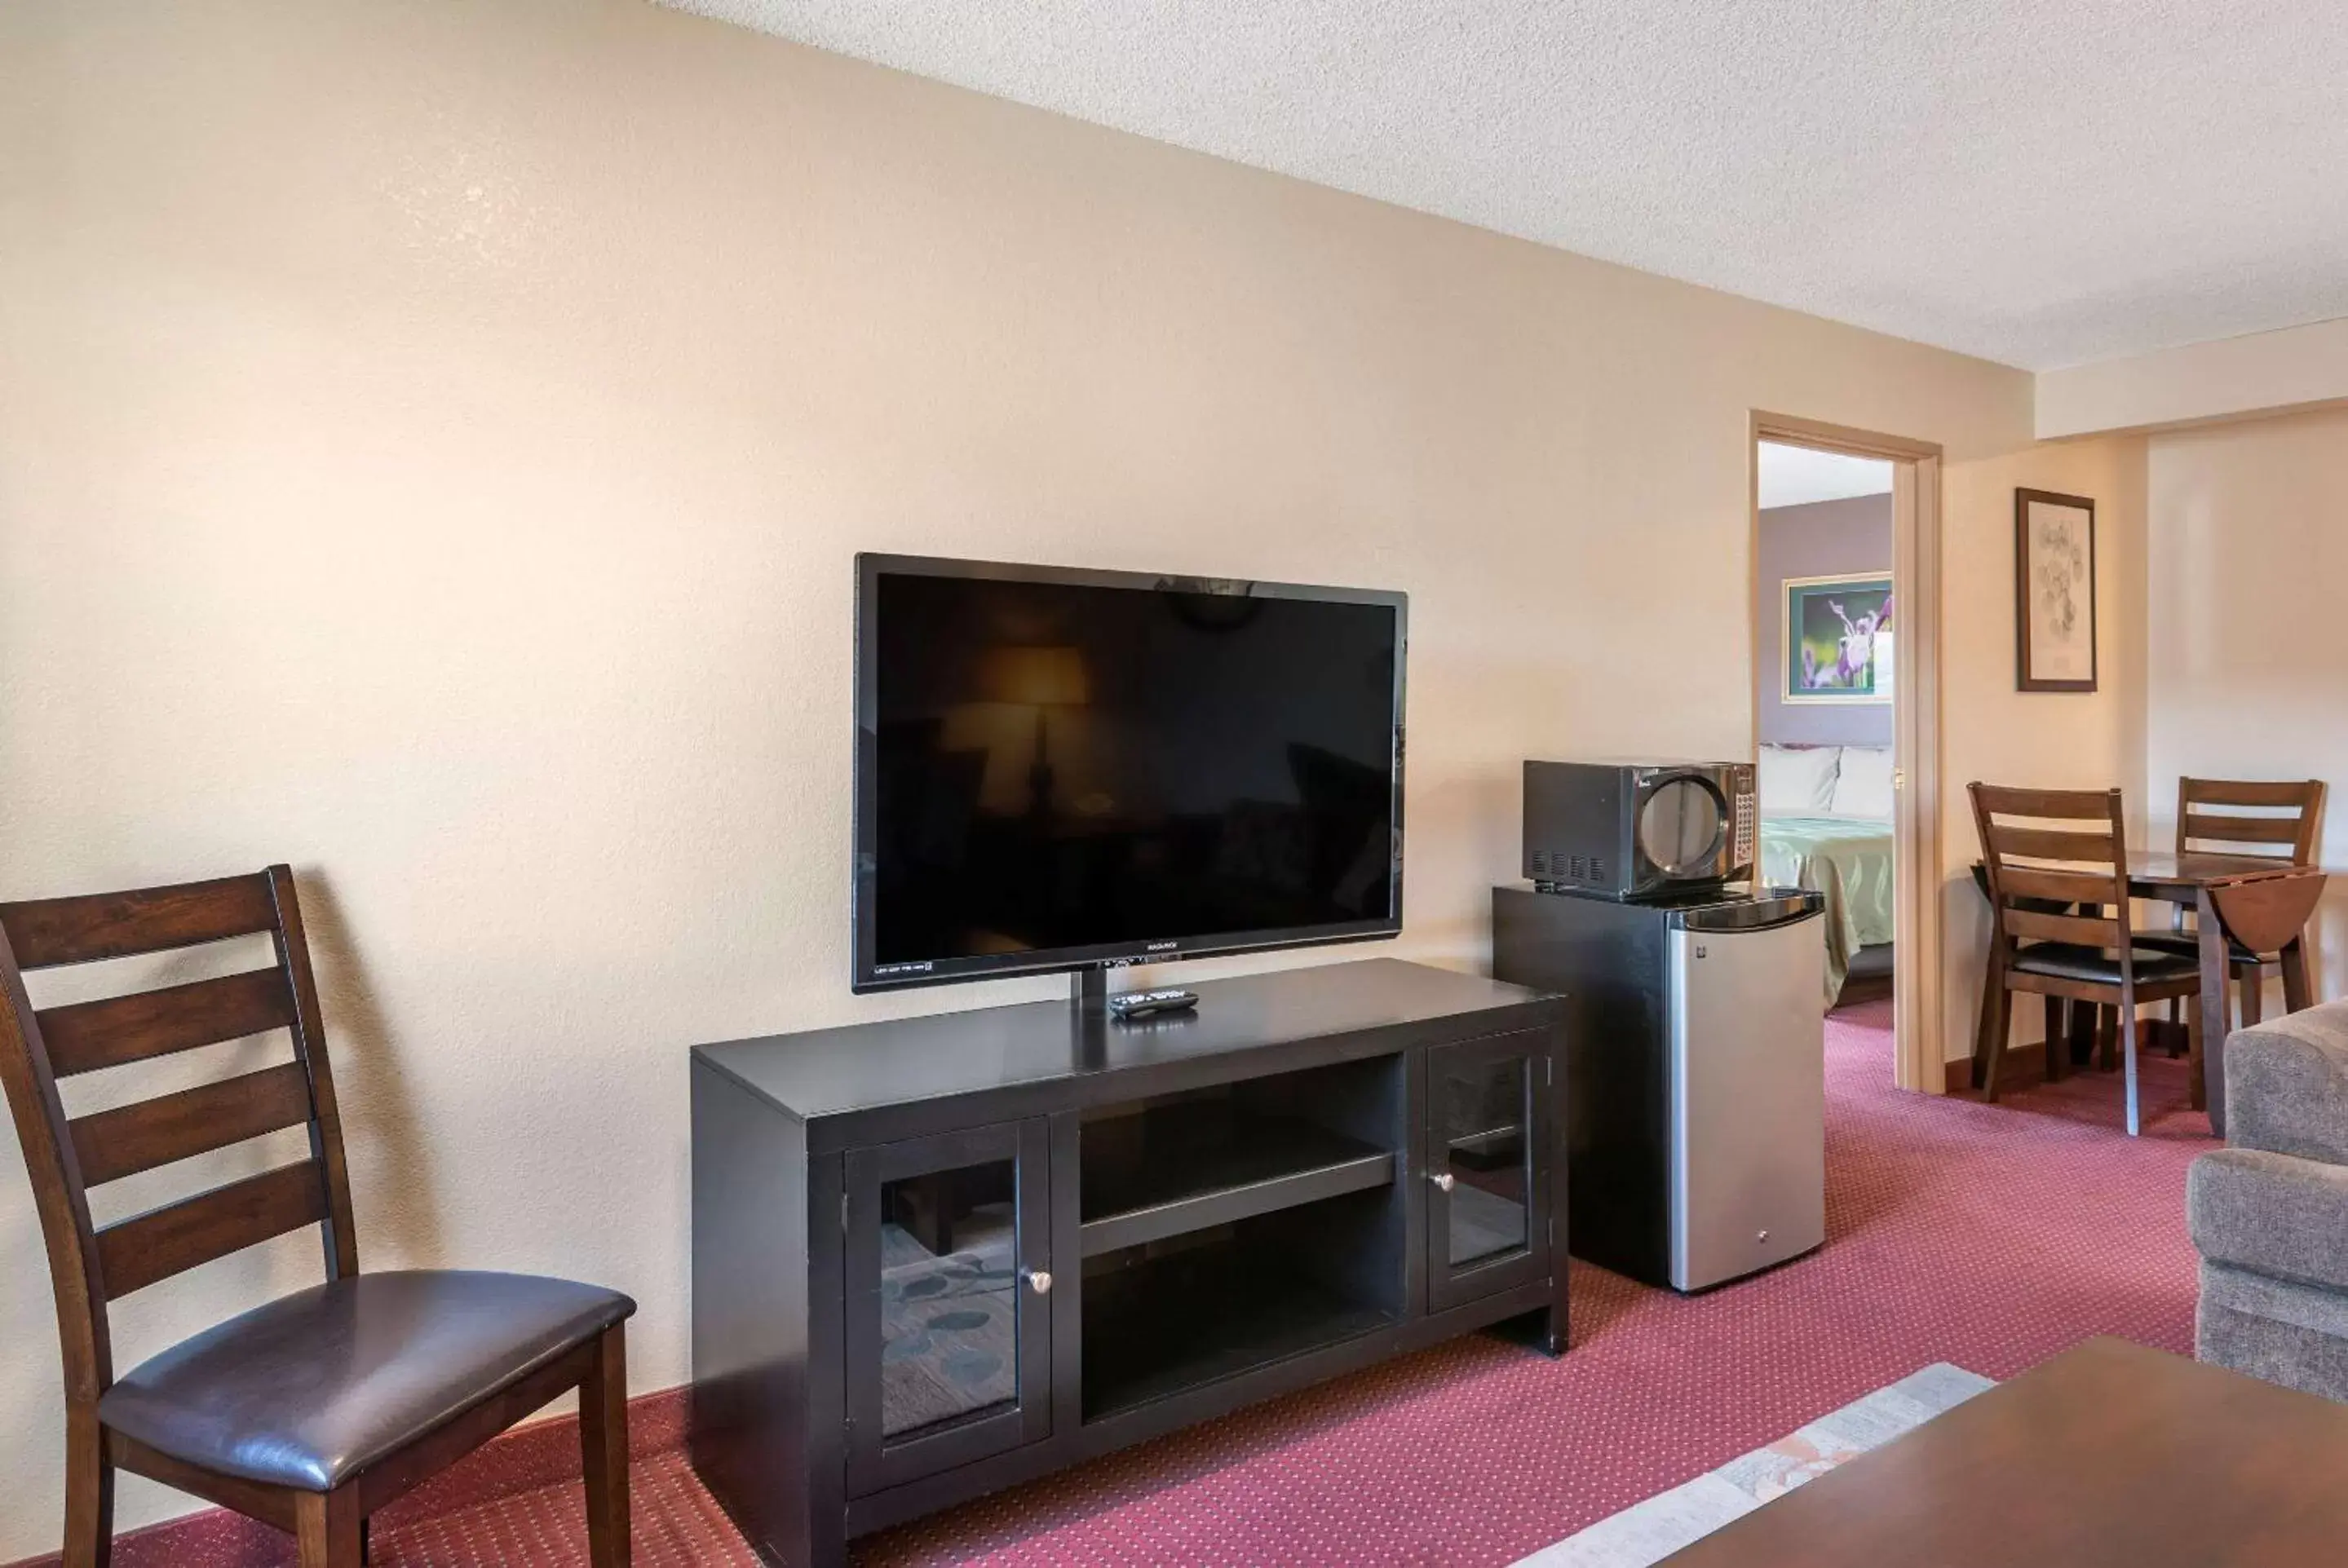 Bedroom, TV/Entertainment Center in Quality Inn Grand Junction near University